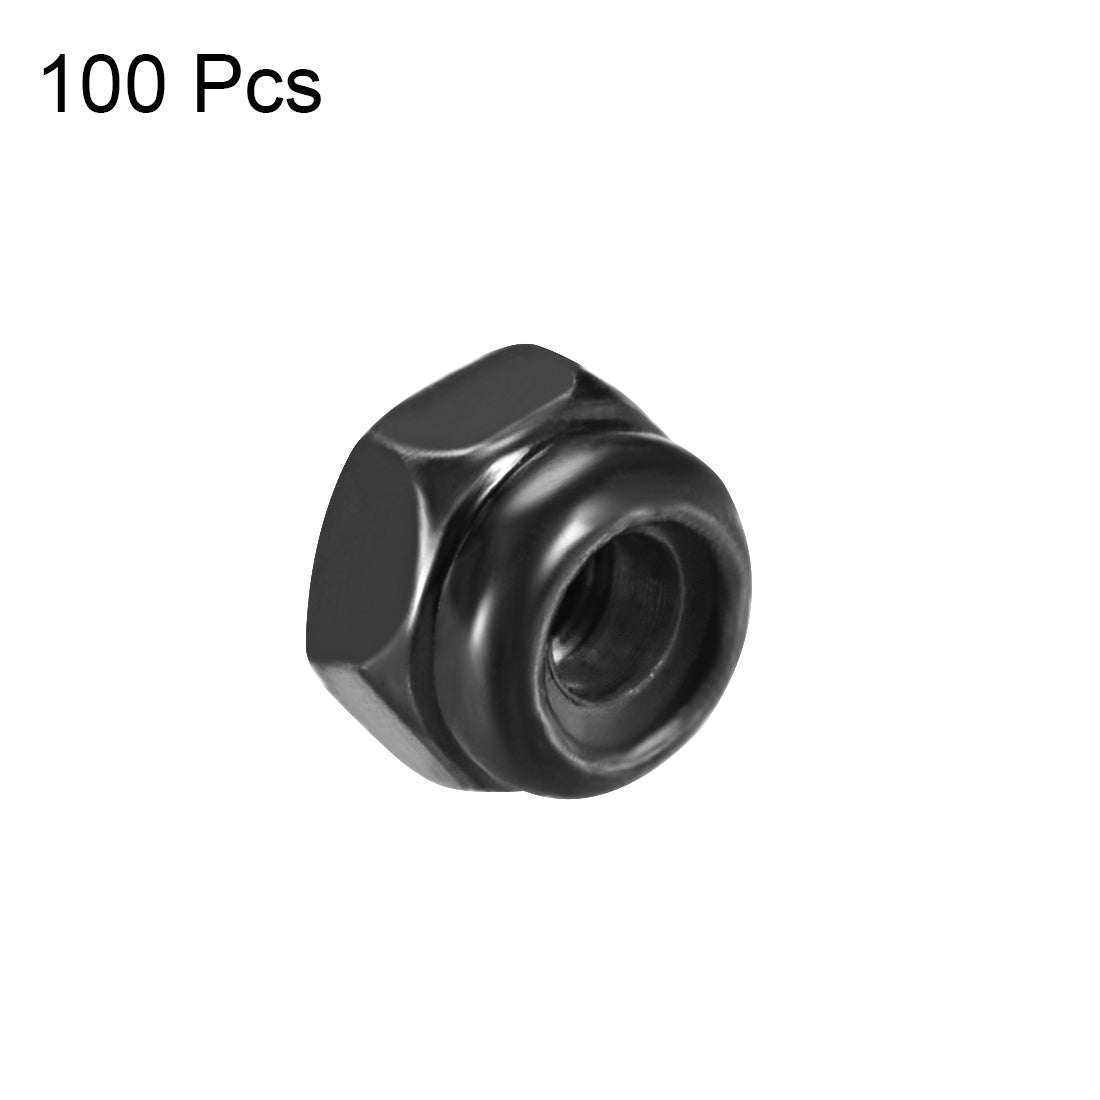 uxcell Uxcell M2.5x0.45mm Hex Lock Nuts Carbon Steel Nylon Insert Self-Lock Nut, 100Pcs Black